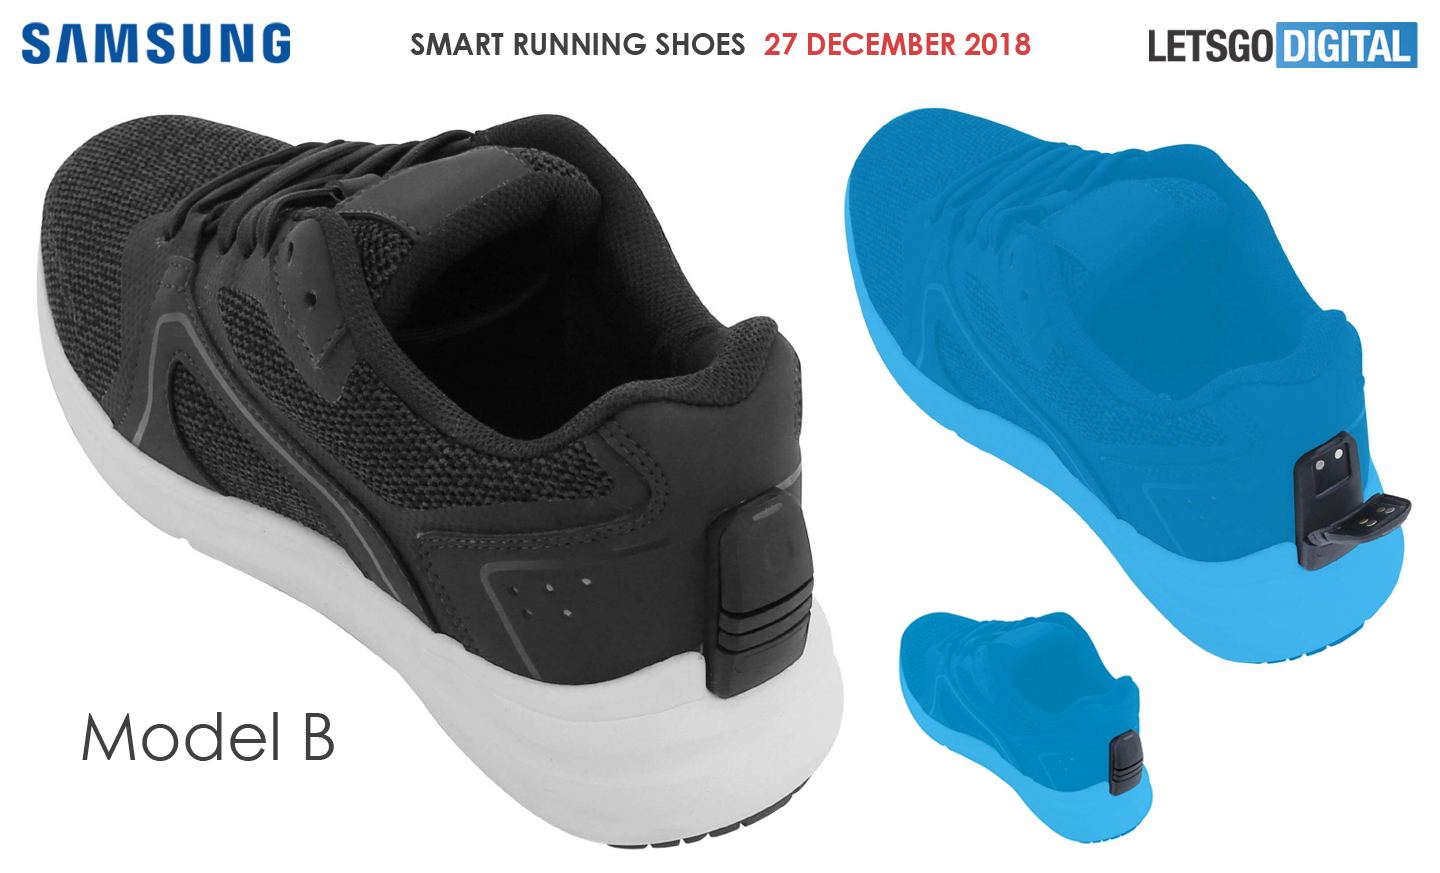 announce Smart Shoes at CES 2019 